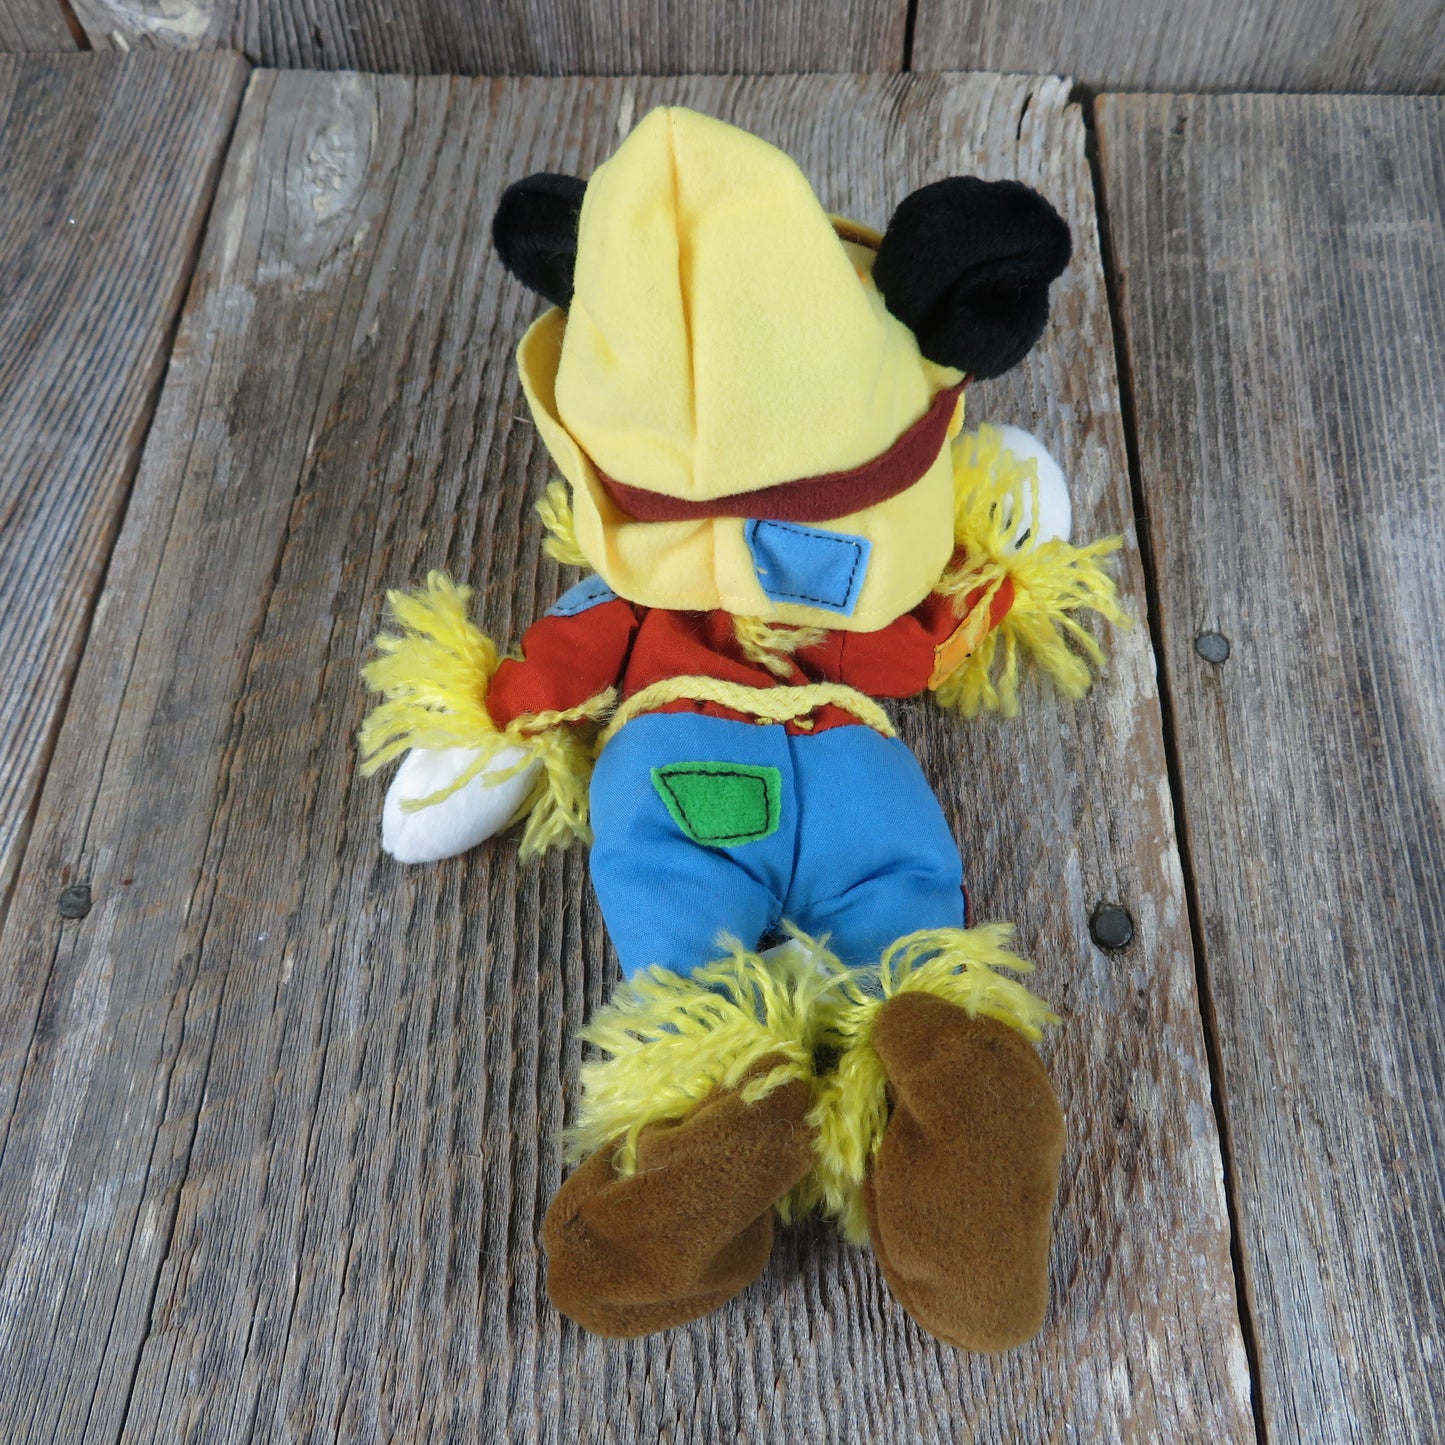 Vintage Mickey Mouse Scarecrow Plush Beanie Disneyland Mouseketoys Bean Bag Stuffed Animal 1990s - At Grandma's Table